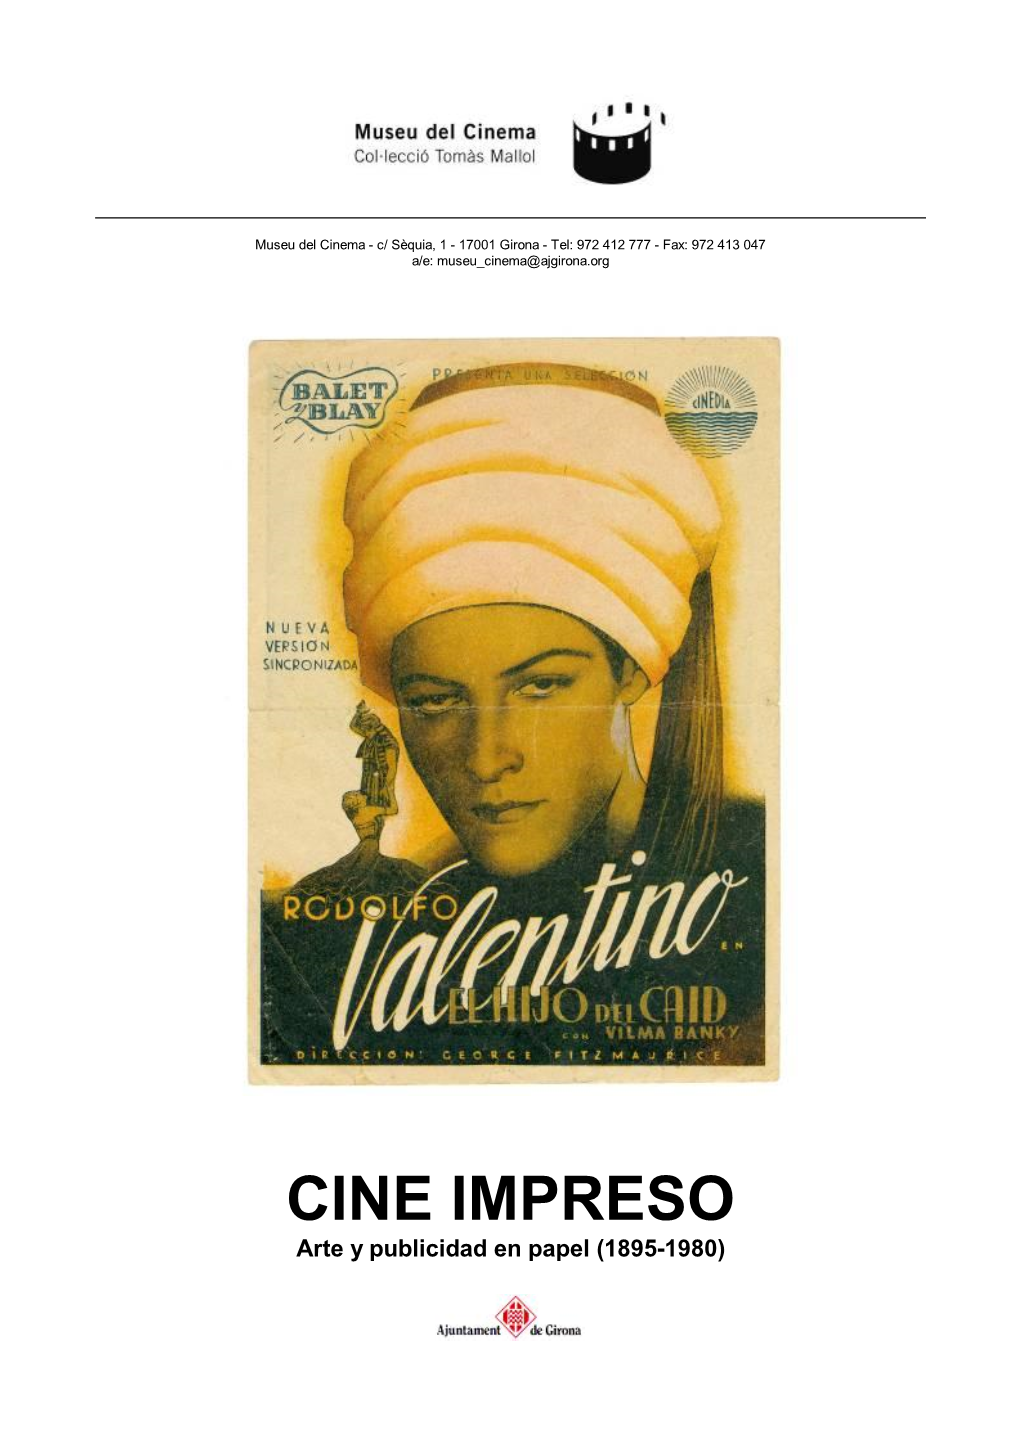 CINE IMPRESO Arte Y Publicidad En Papel (1895-1980)